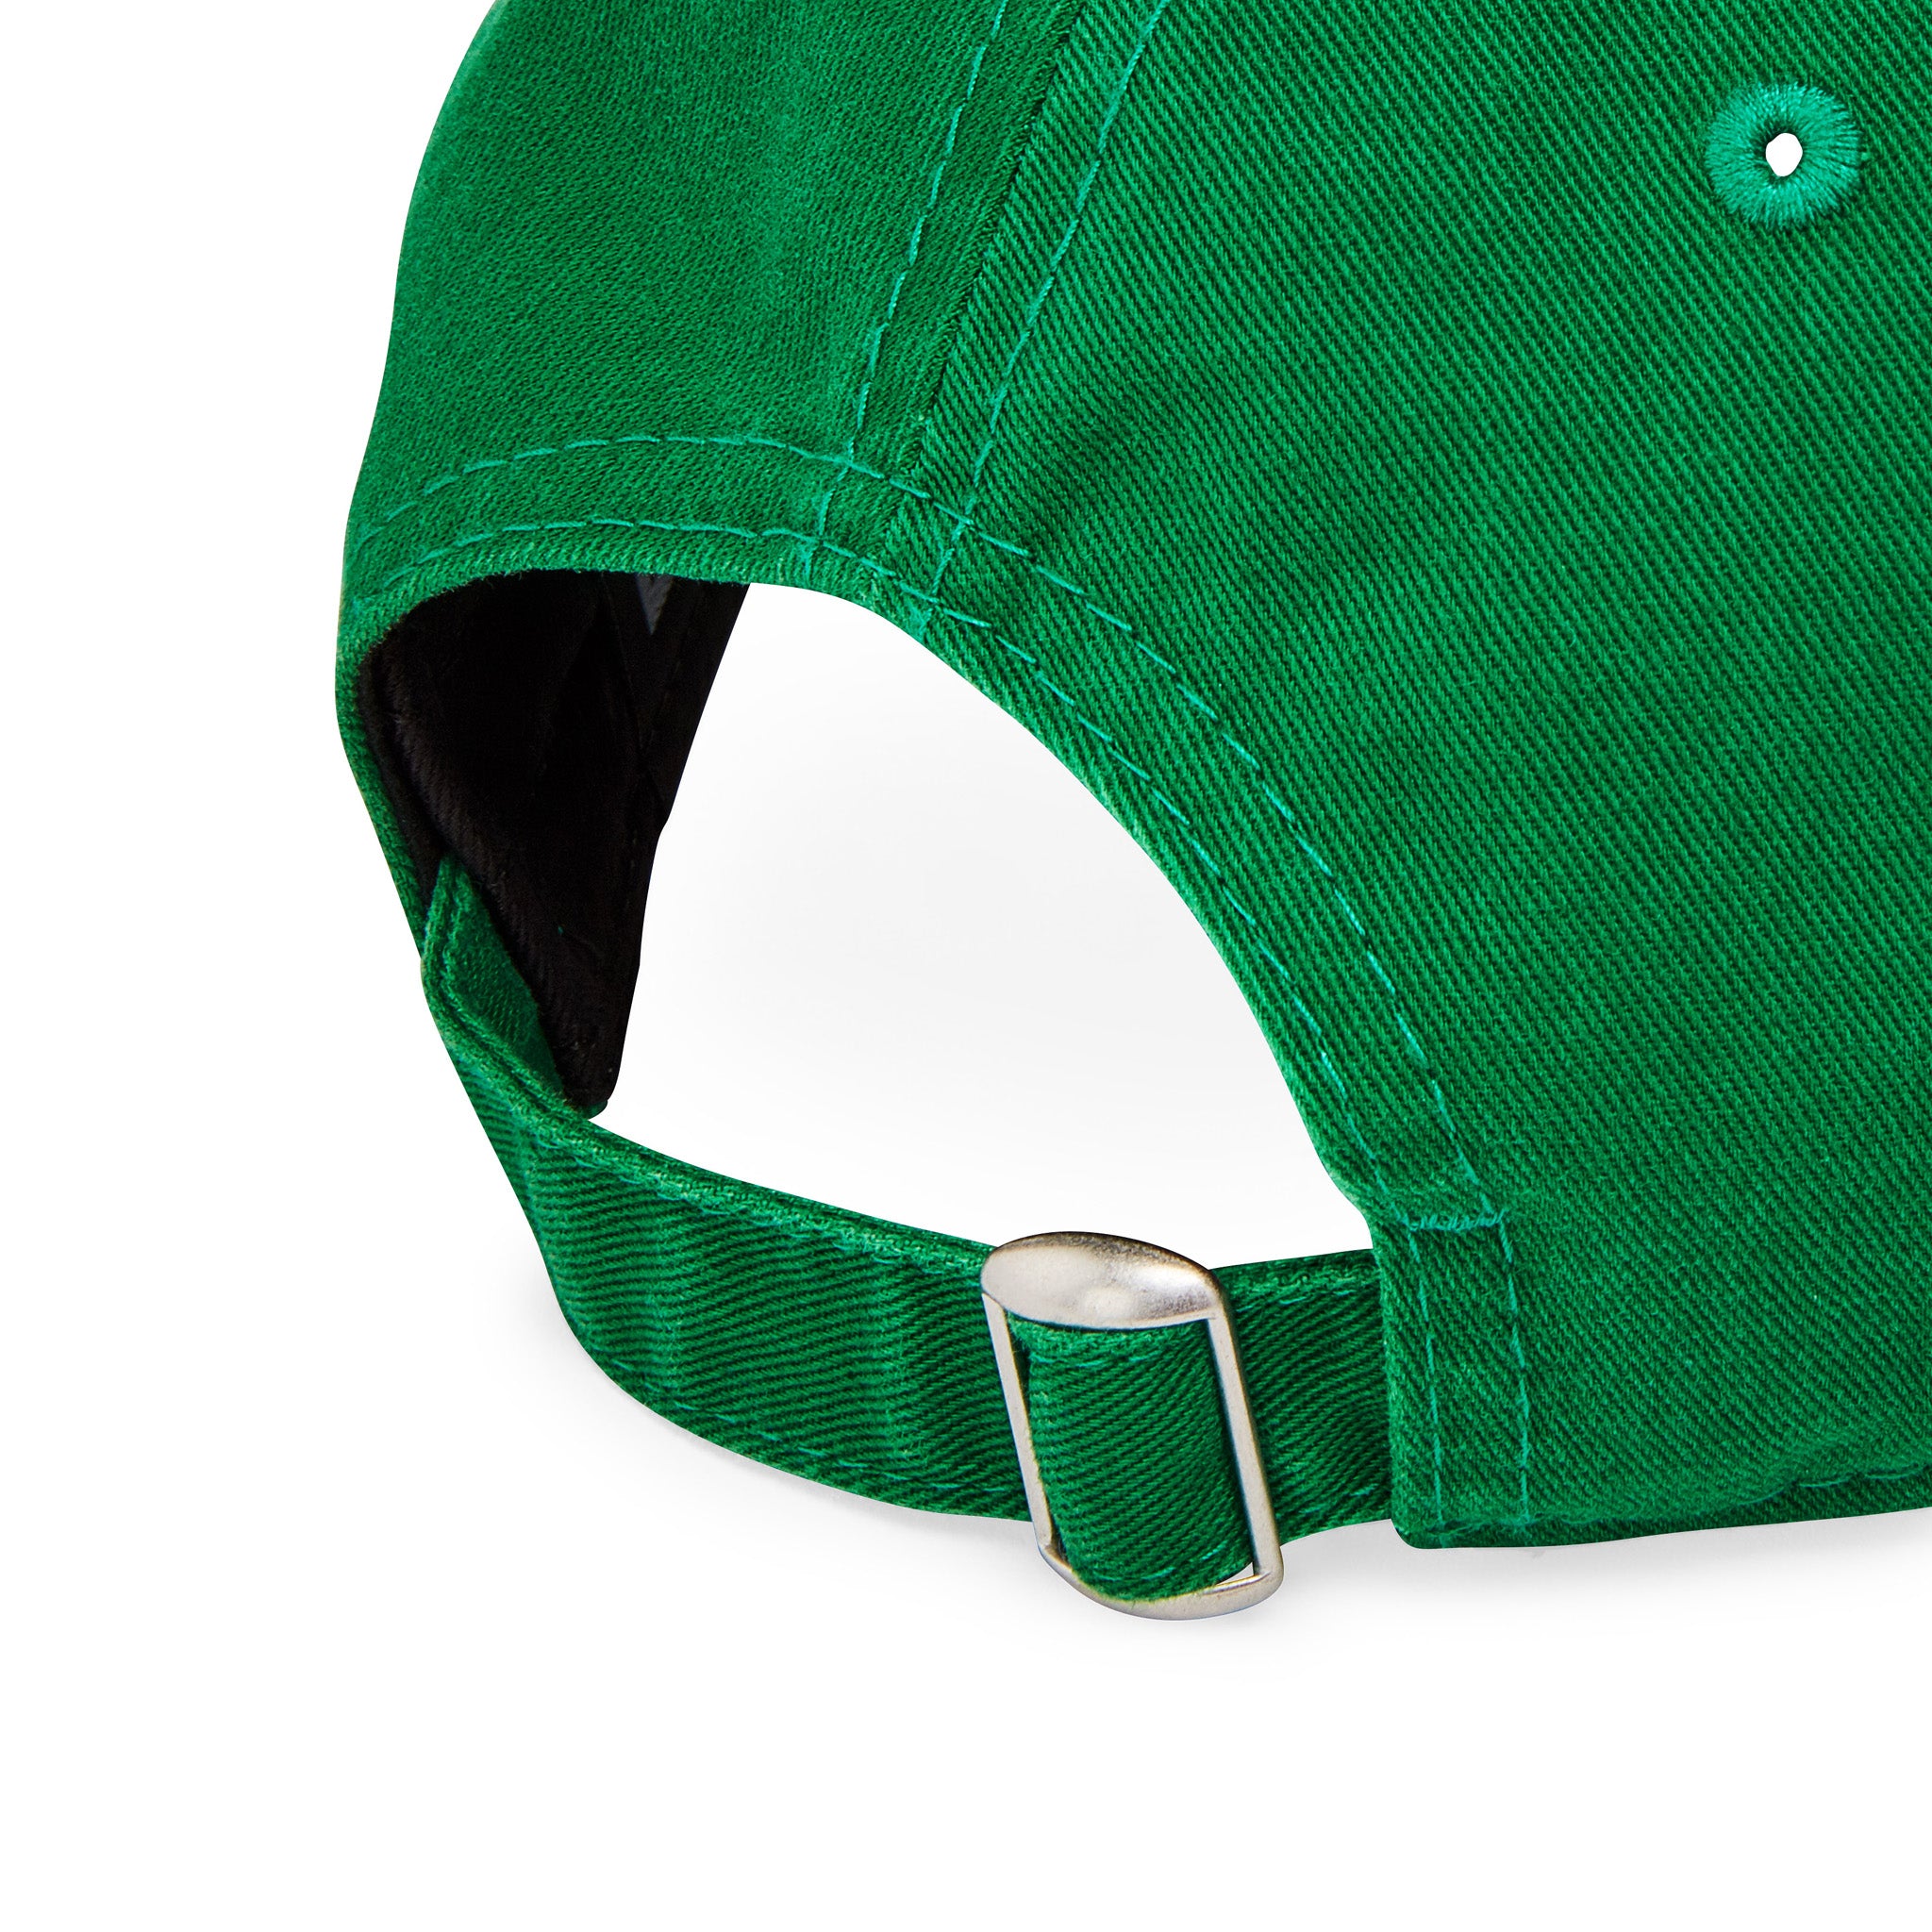 MoMA NY Yankees Design MoMA Baseball – Cap Store Adjustable Green Kelly 